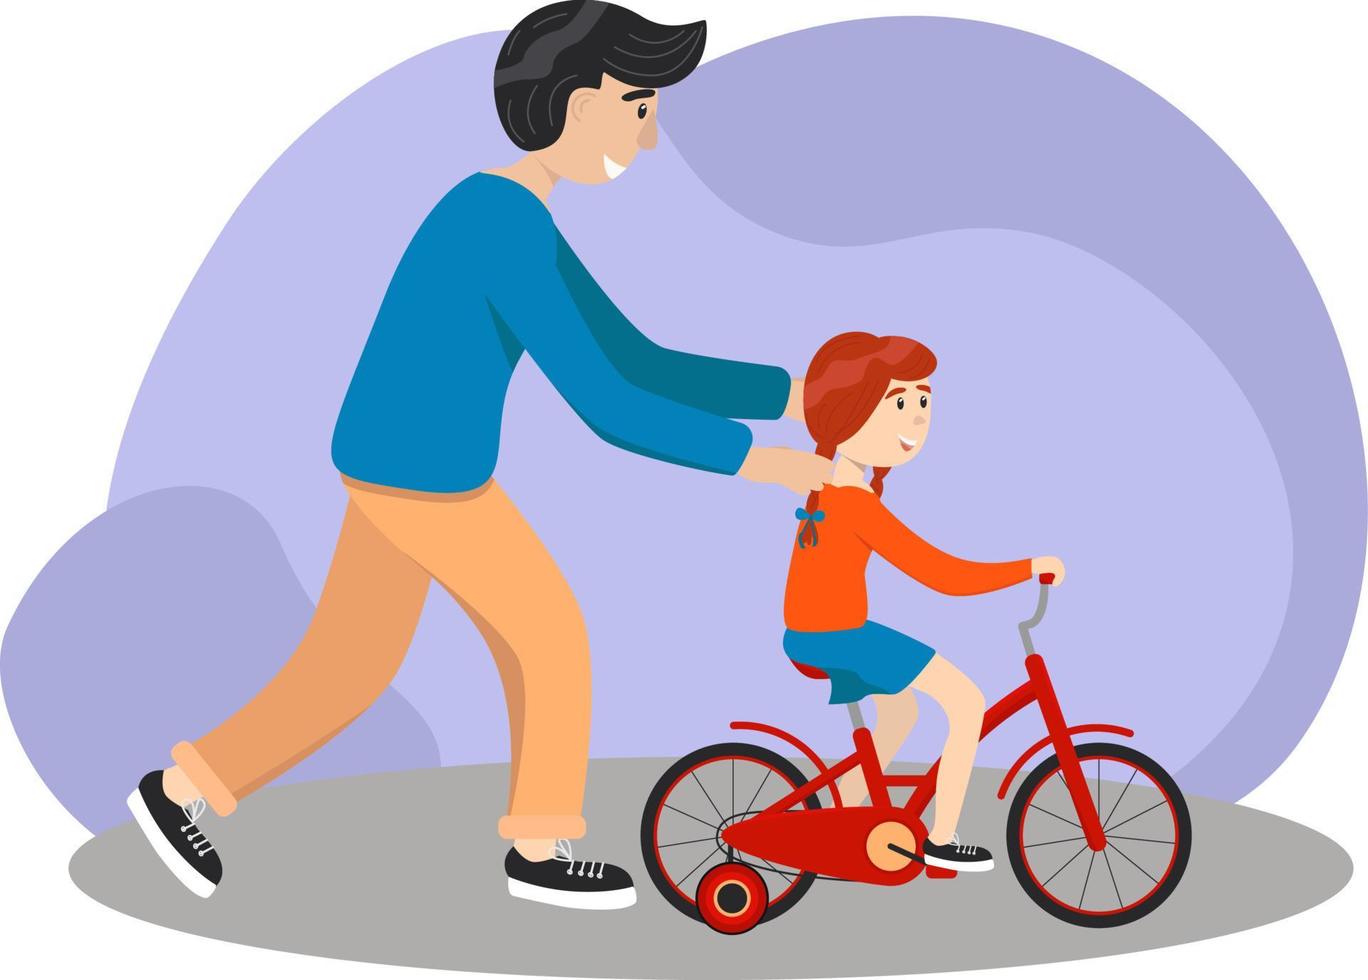 Vater bringt Tochter Fahrradfahren bei. Kind lernt Fahrrad fahren. Elternkonzept. Vater hilft seinem Mädchen, gemeinsam Fahrradfahren auf dem Land zu lernen. Stock-Vektor-Illustration, Folge 10. vektor